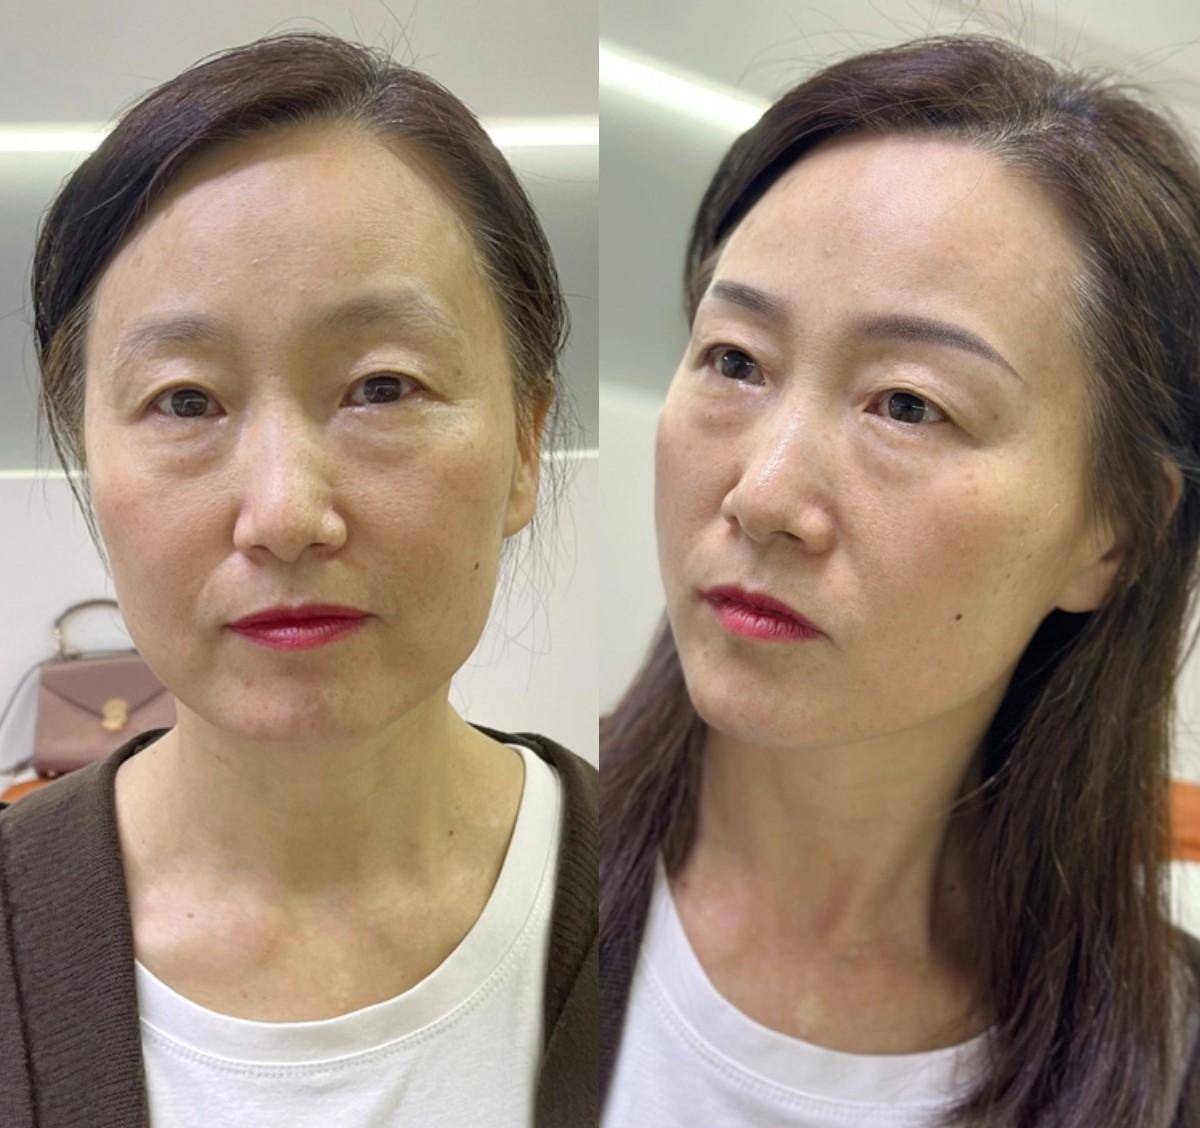 为什么一直建议50 女人画眉毛?看看这4张对比图,差距真大